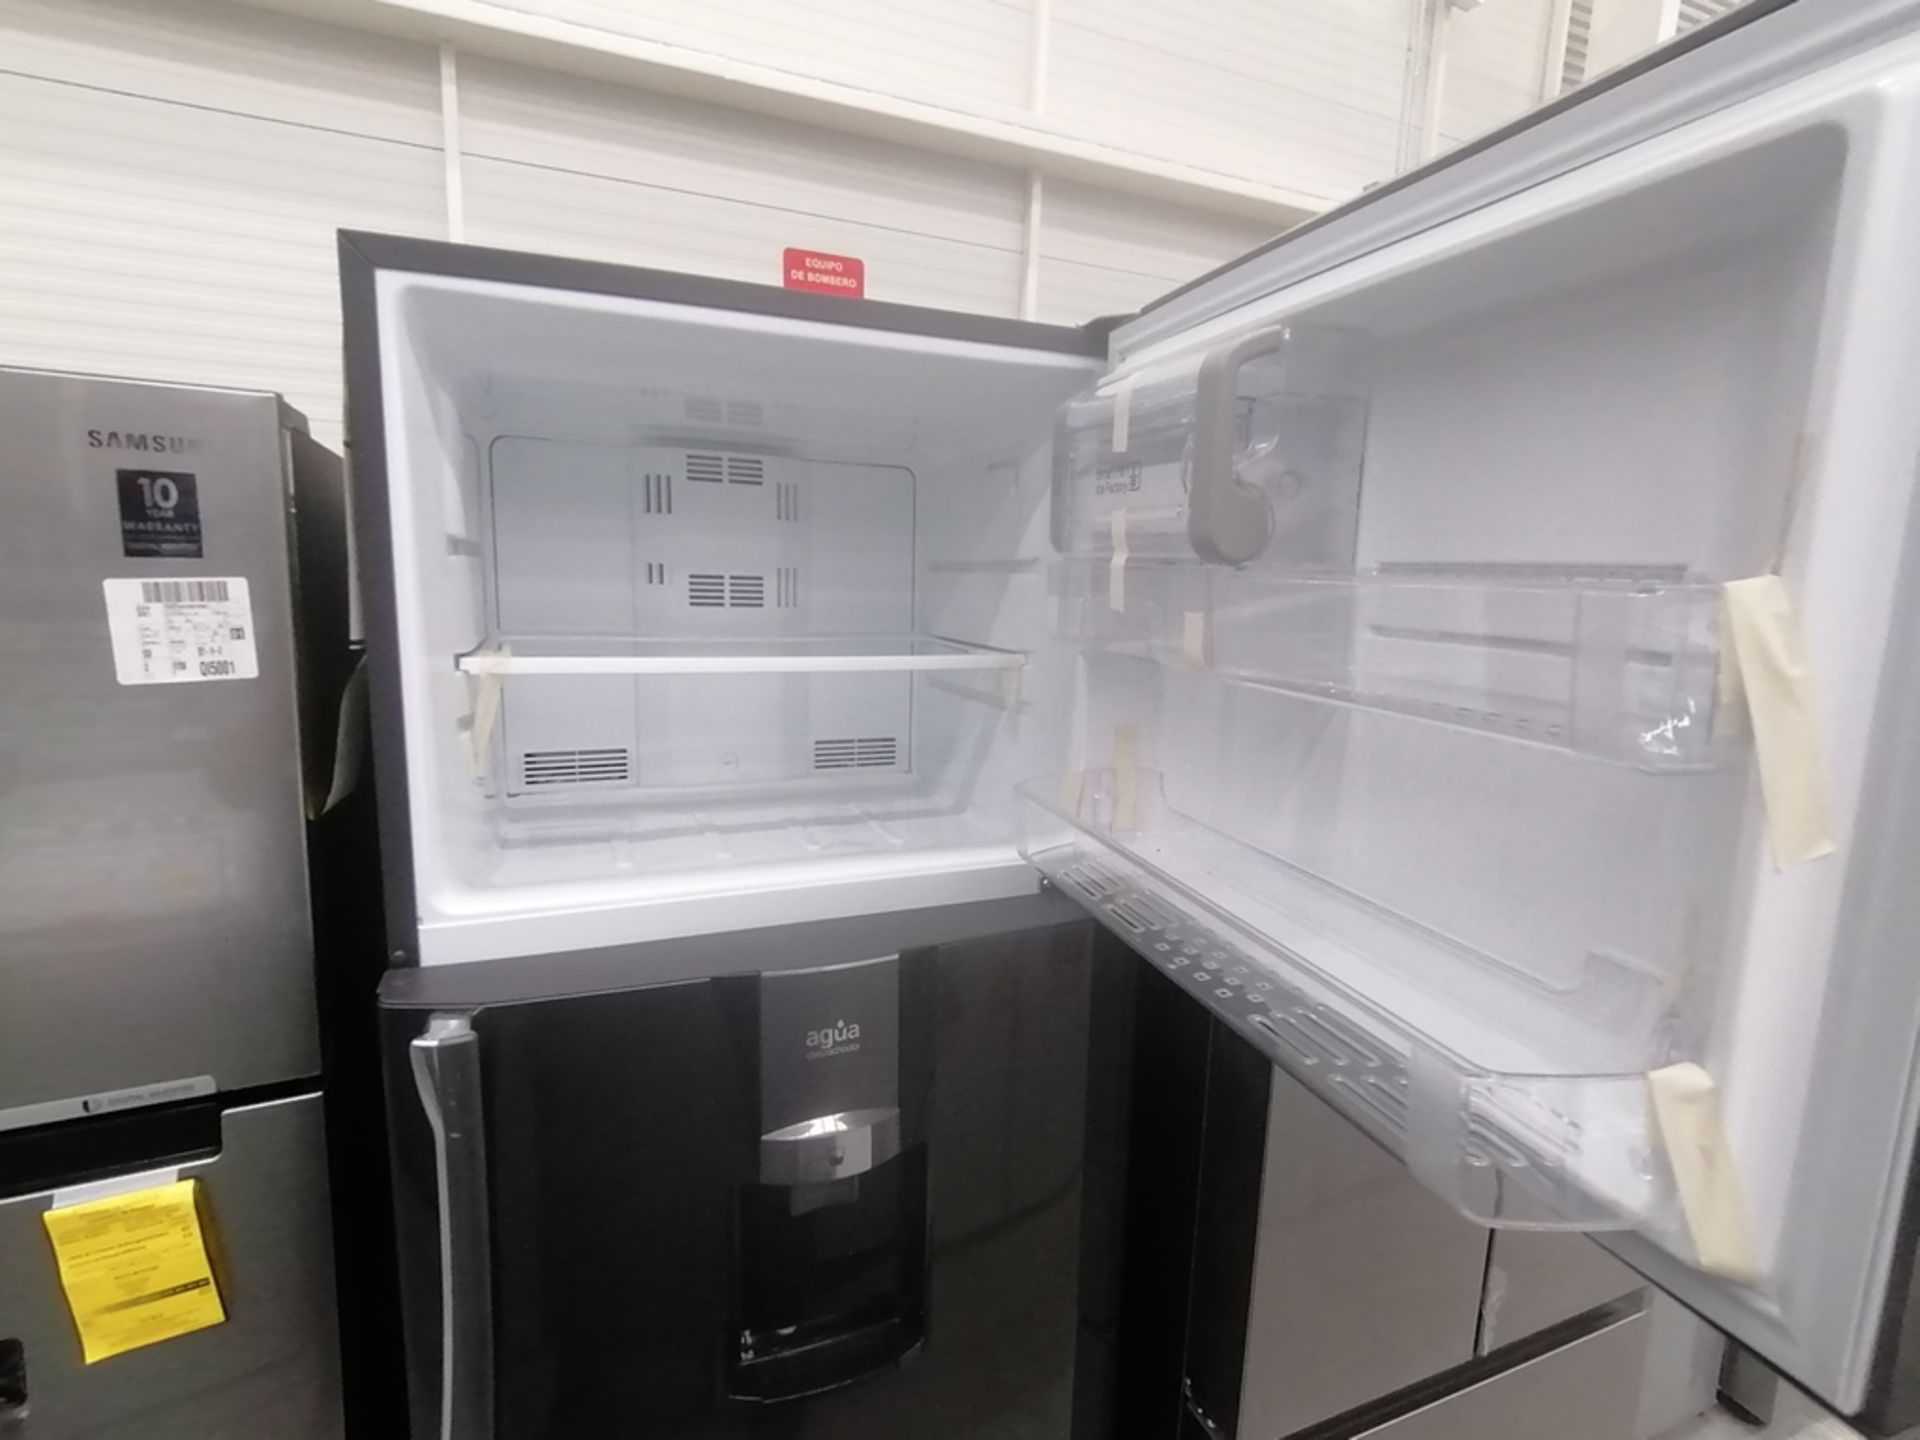 Lote de 2 refrigeradores incluye: 1 Refrigerador, Marca Samsung, Modelo RT22A401059, Serie 8BA84BBR - Image 11 of 15